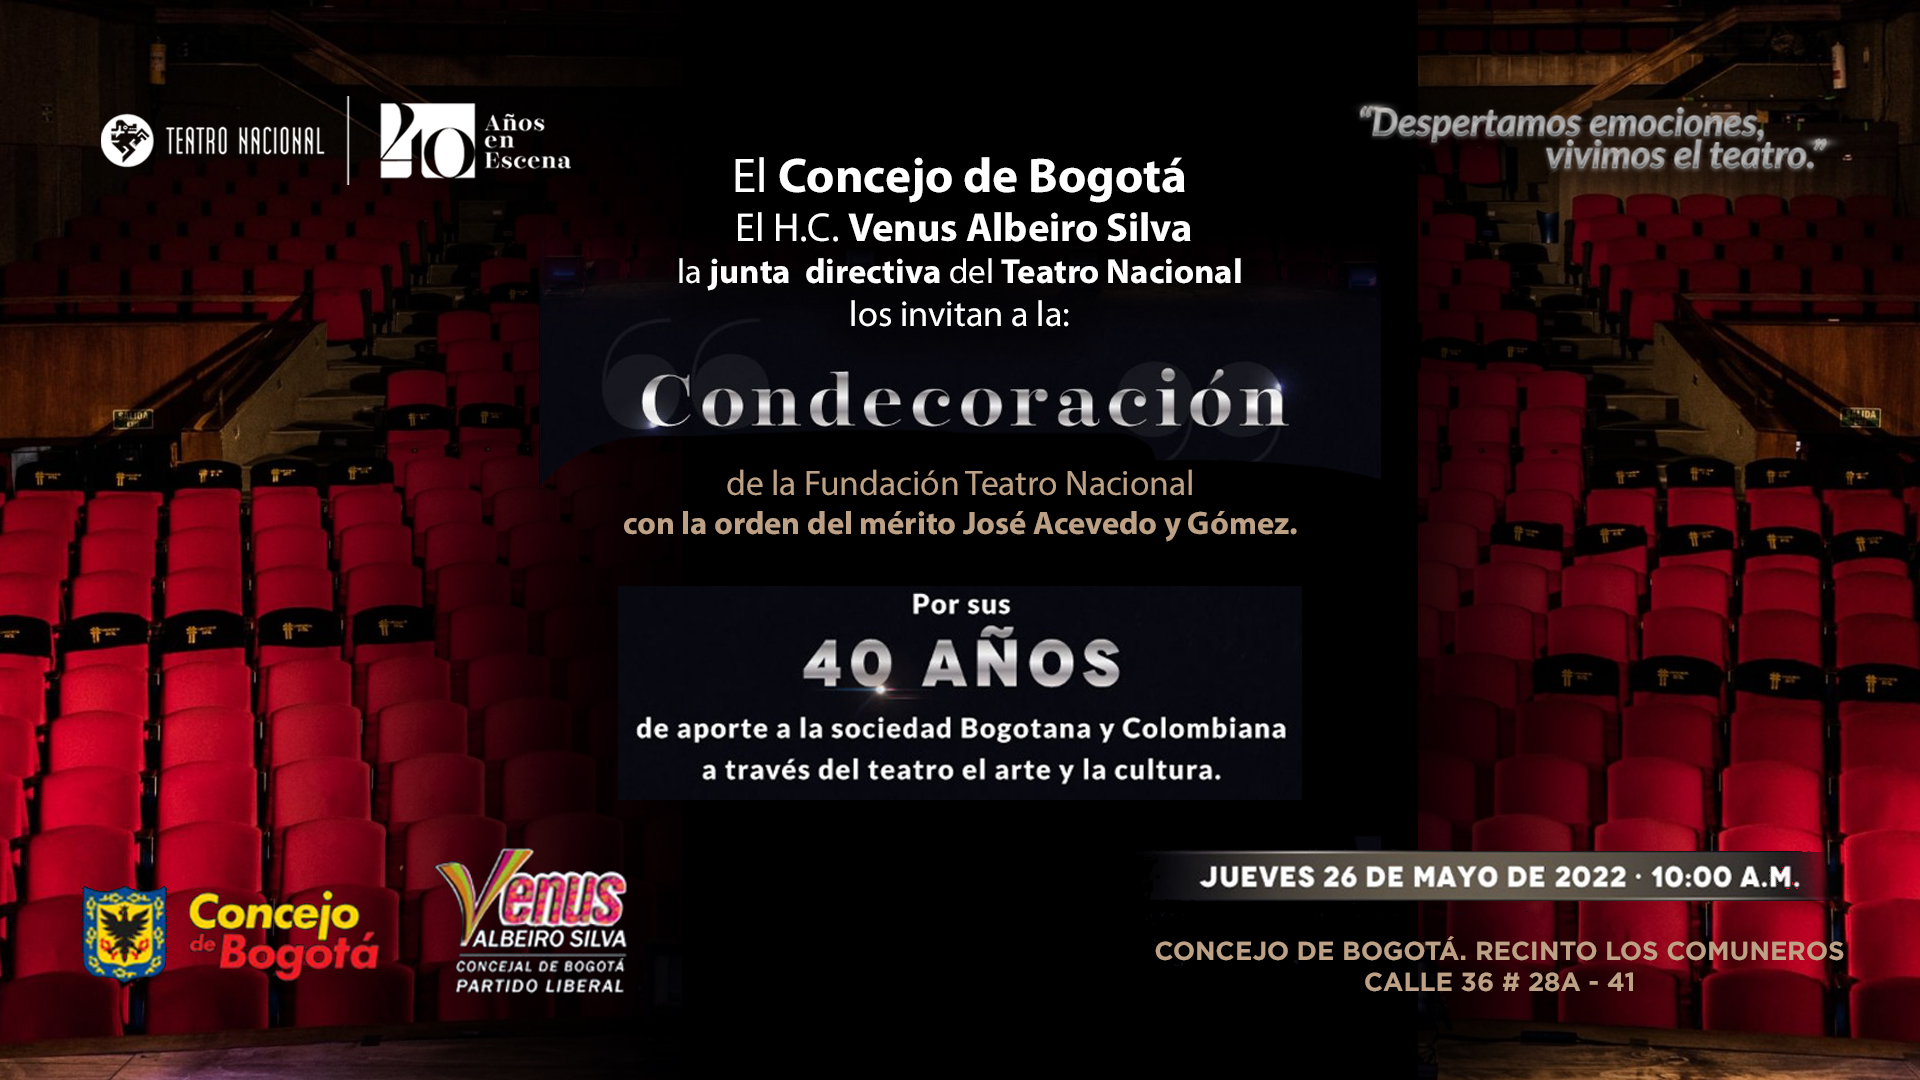 Invitación a la condecoración de la Fundación Teatro Nacional  el Jueves 26 de mayo de 2022 a las 10 a.m. en el Recinto los comuneros del Concejo de Bogotá